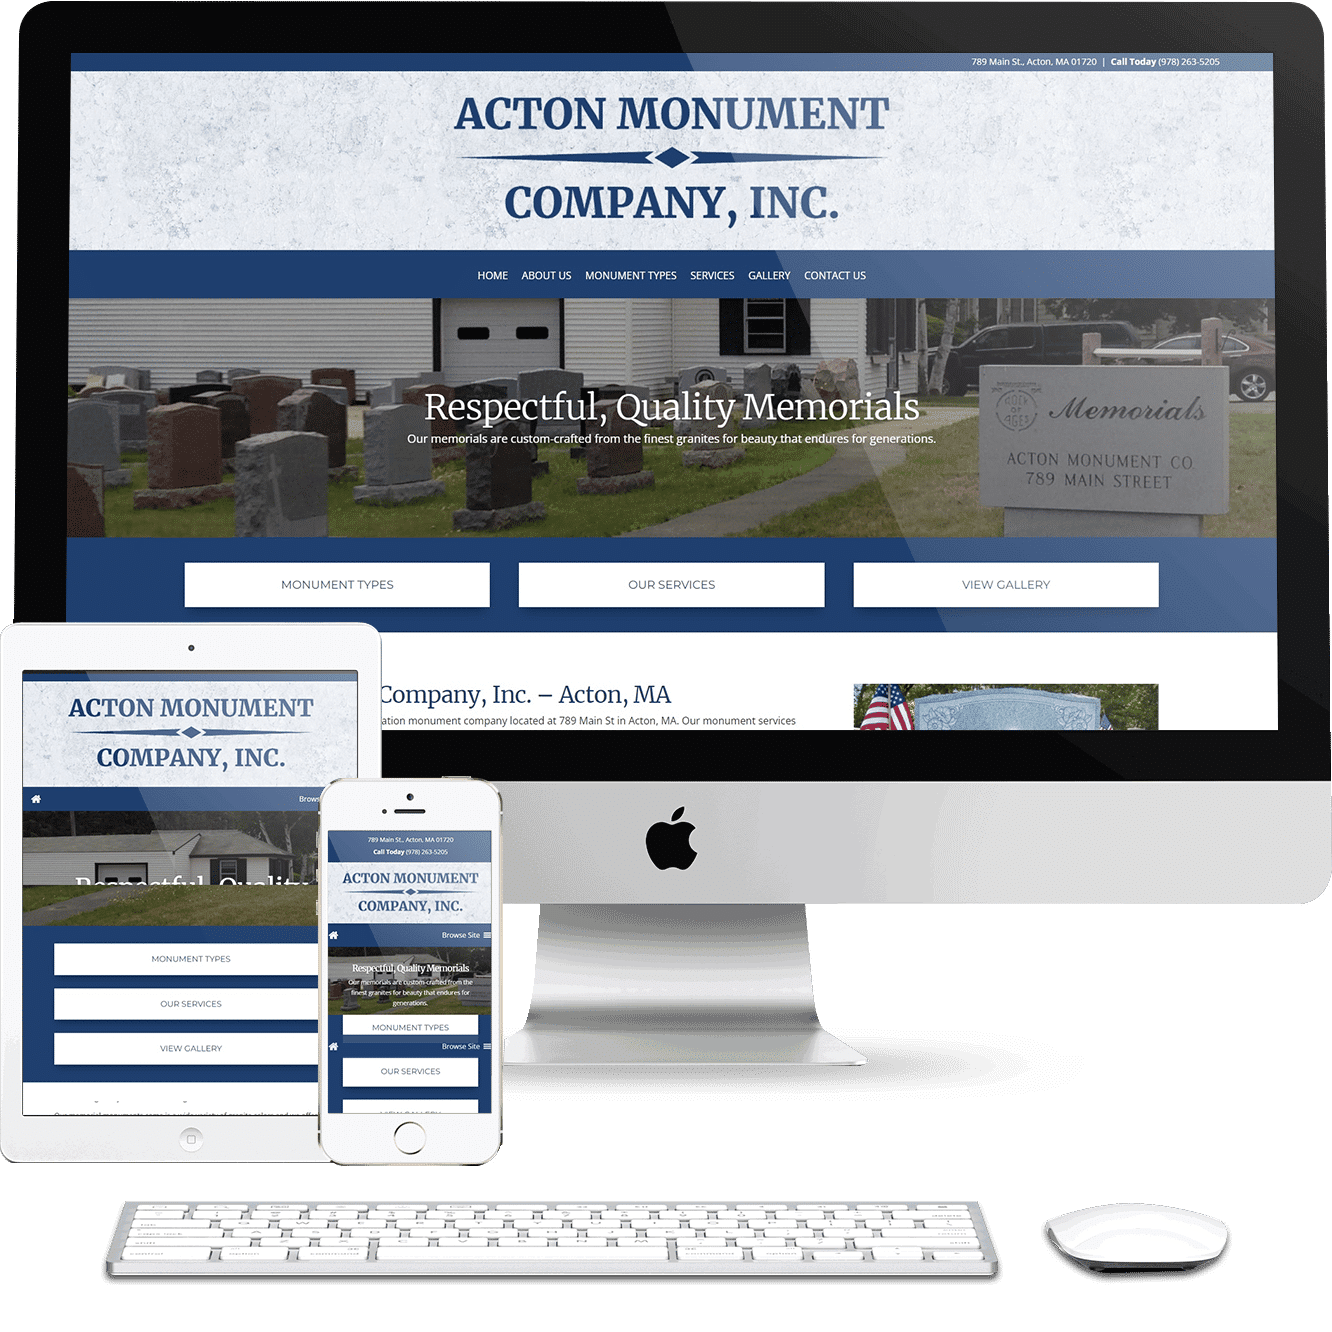 Acton Monument Company